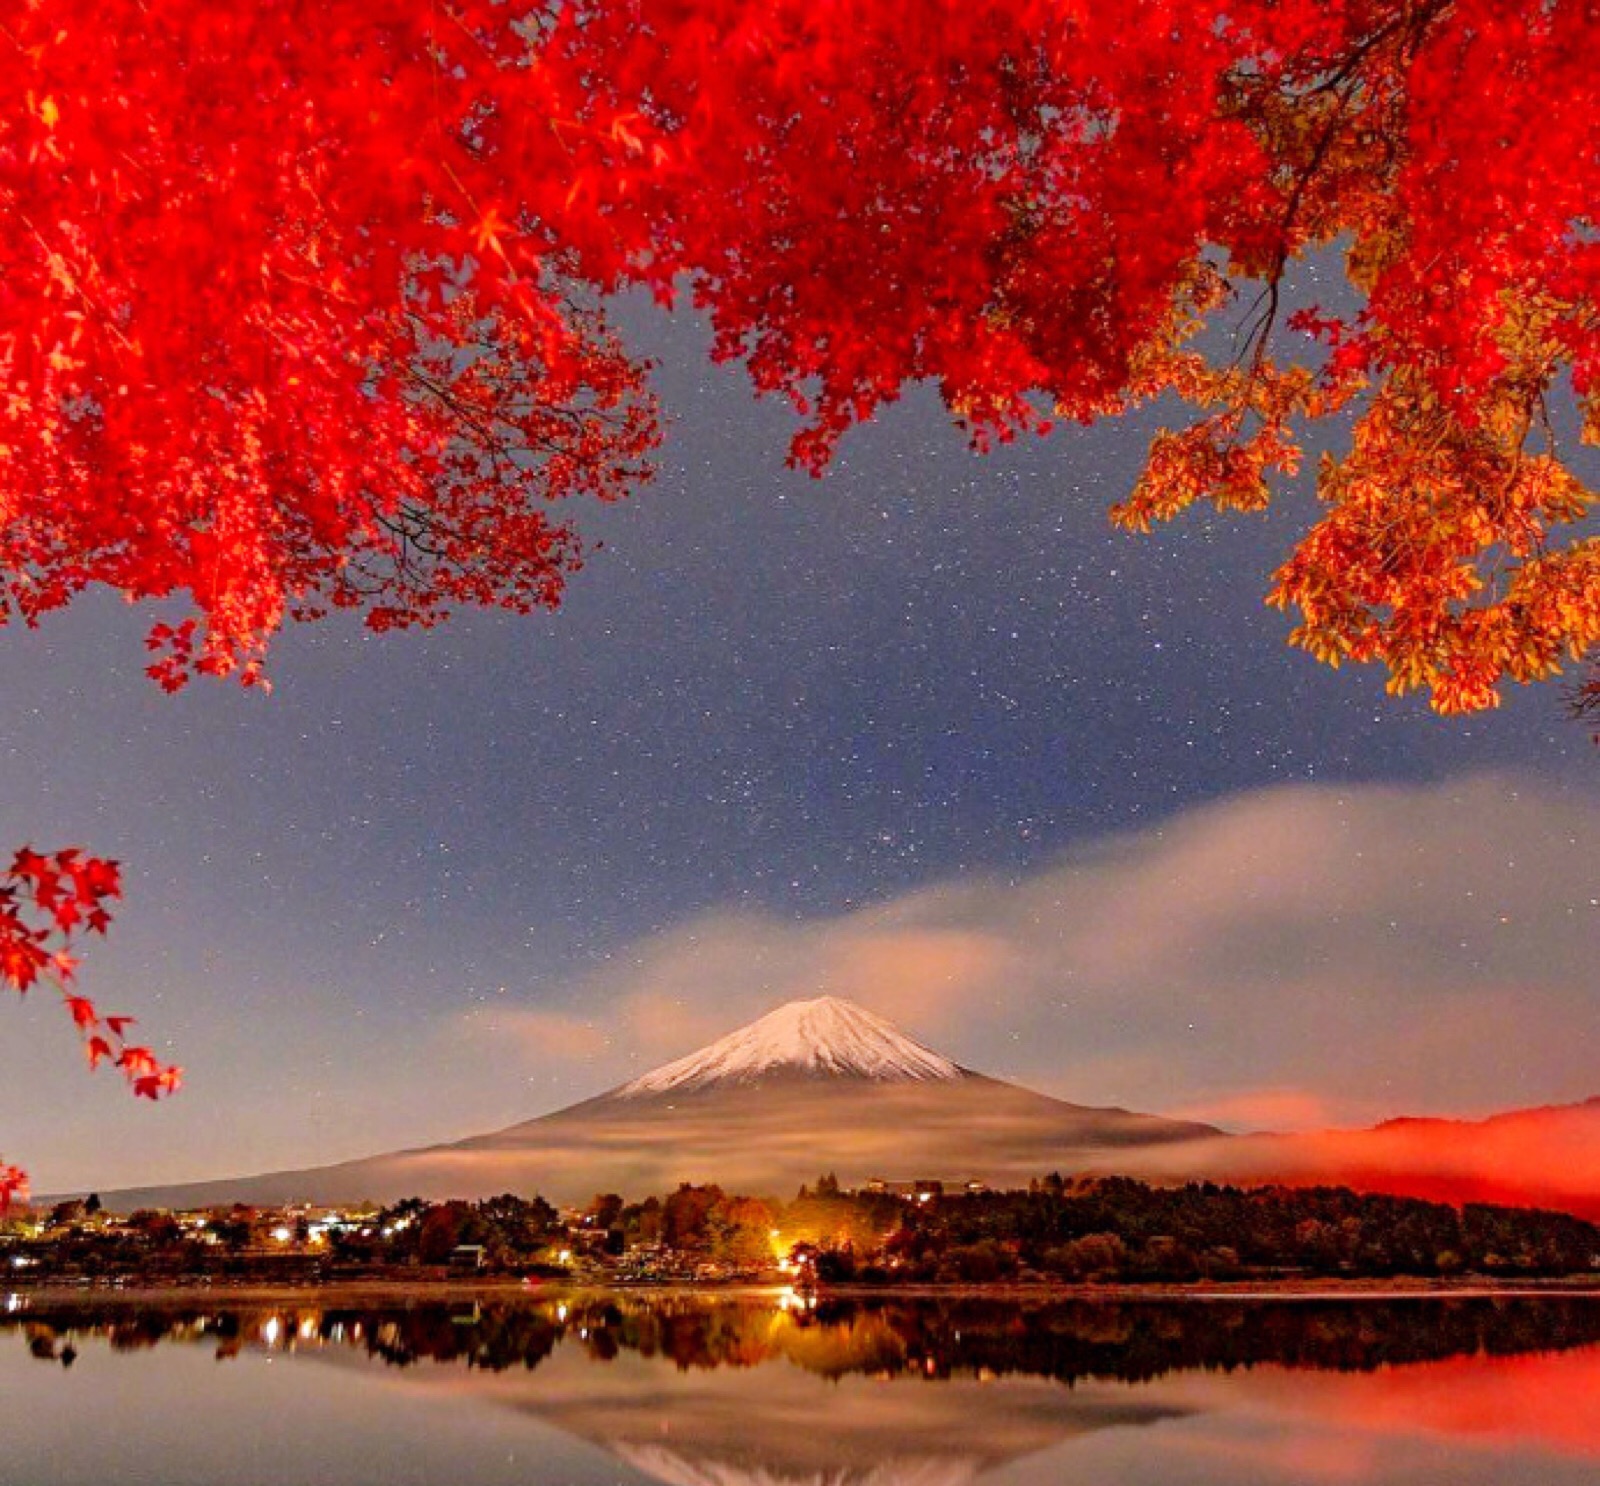 红叶的富士山 堆糖 美图壁纸兴趣社区